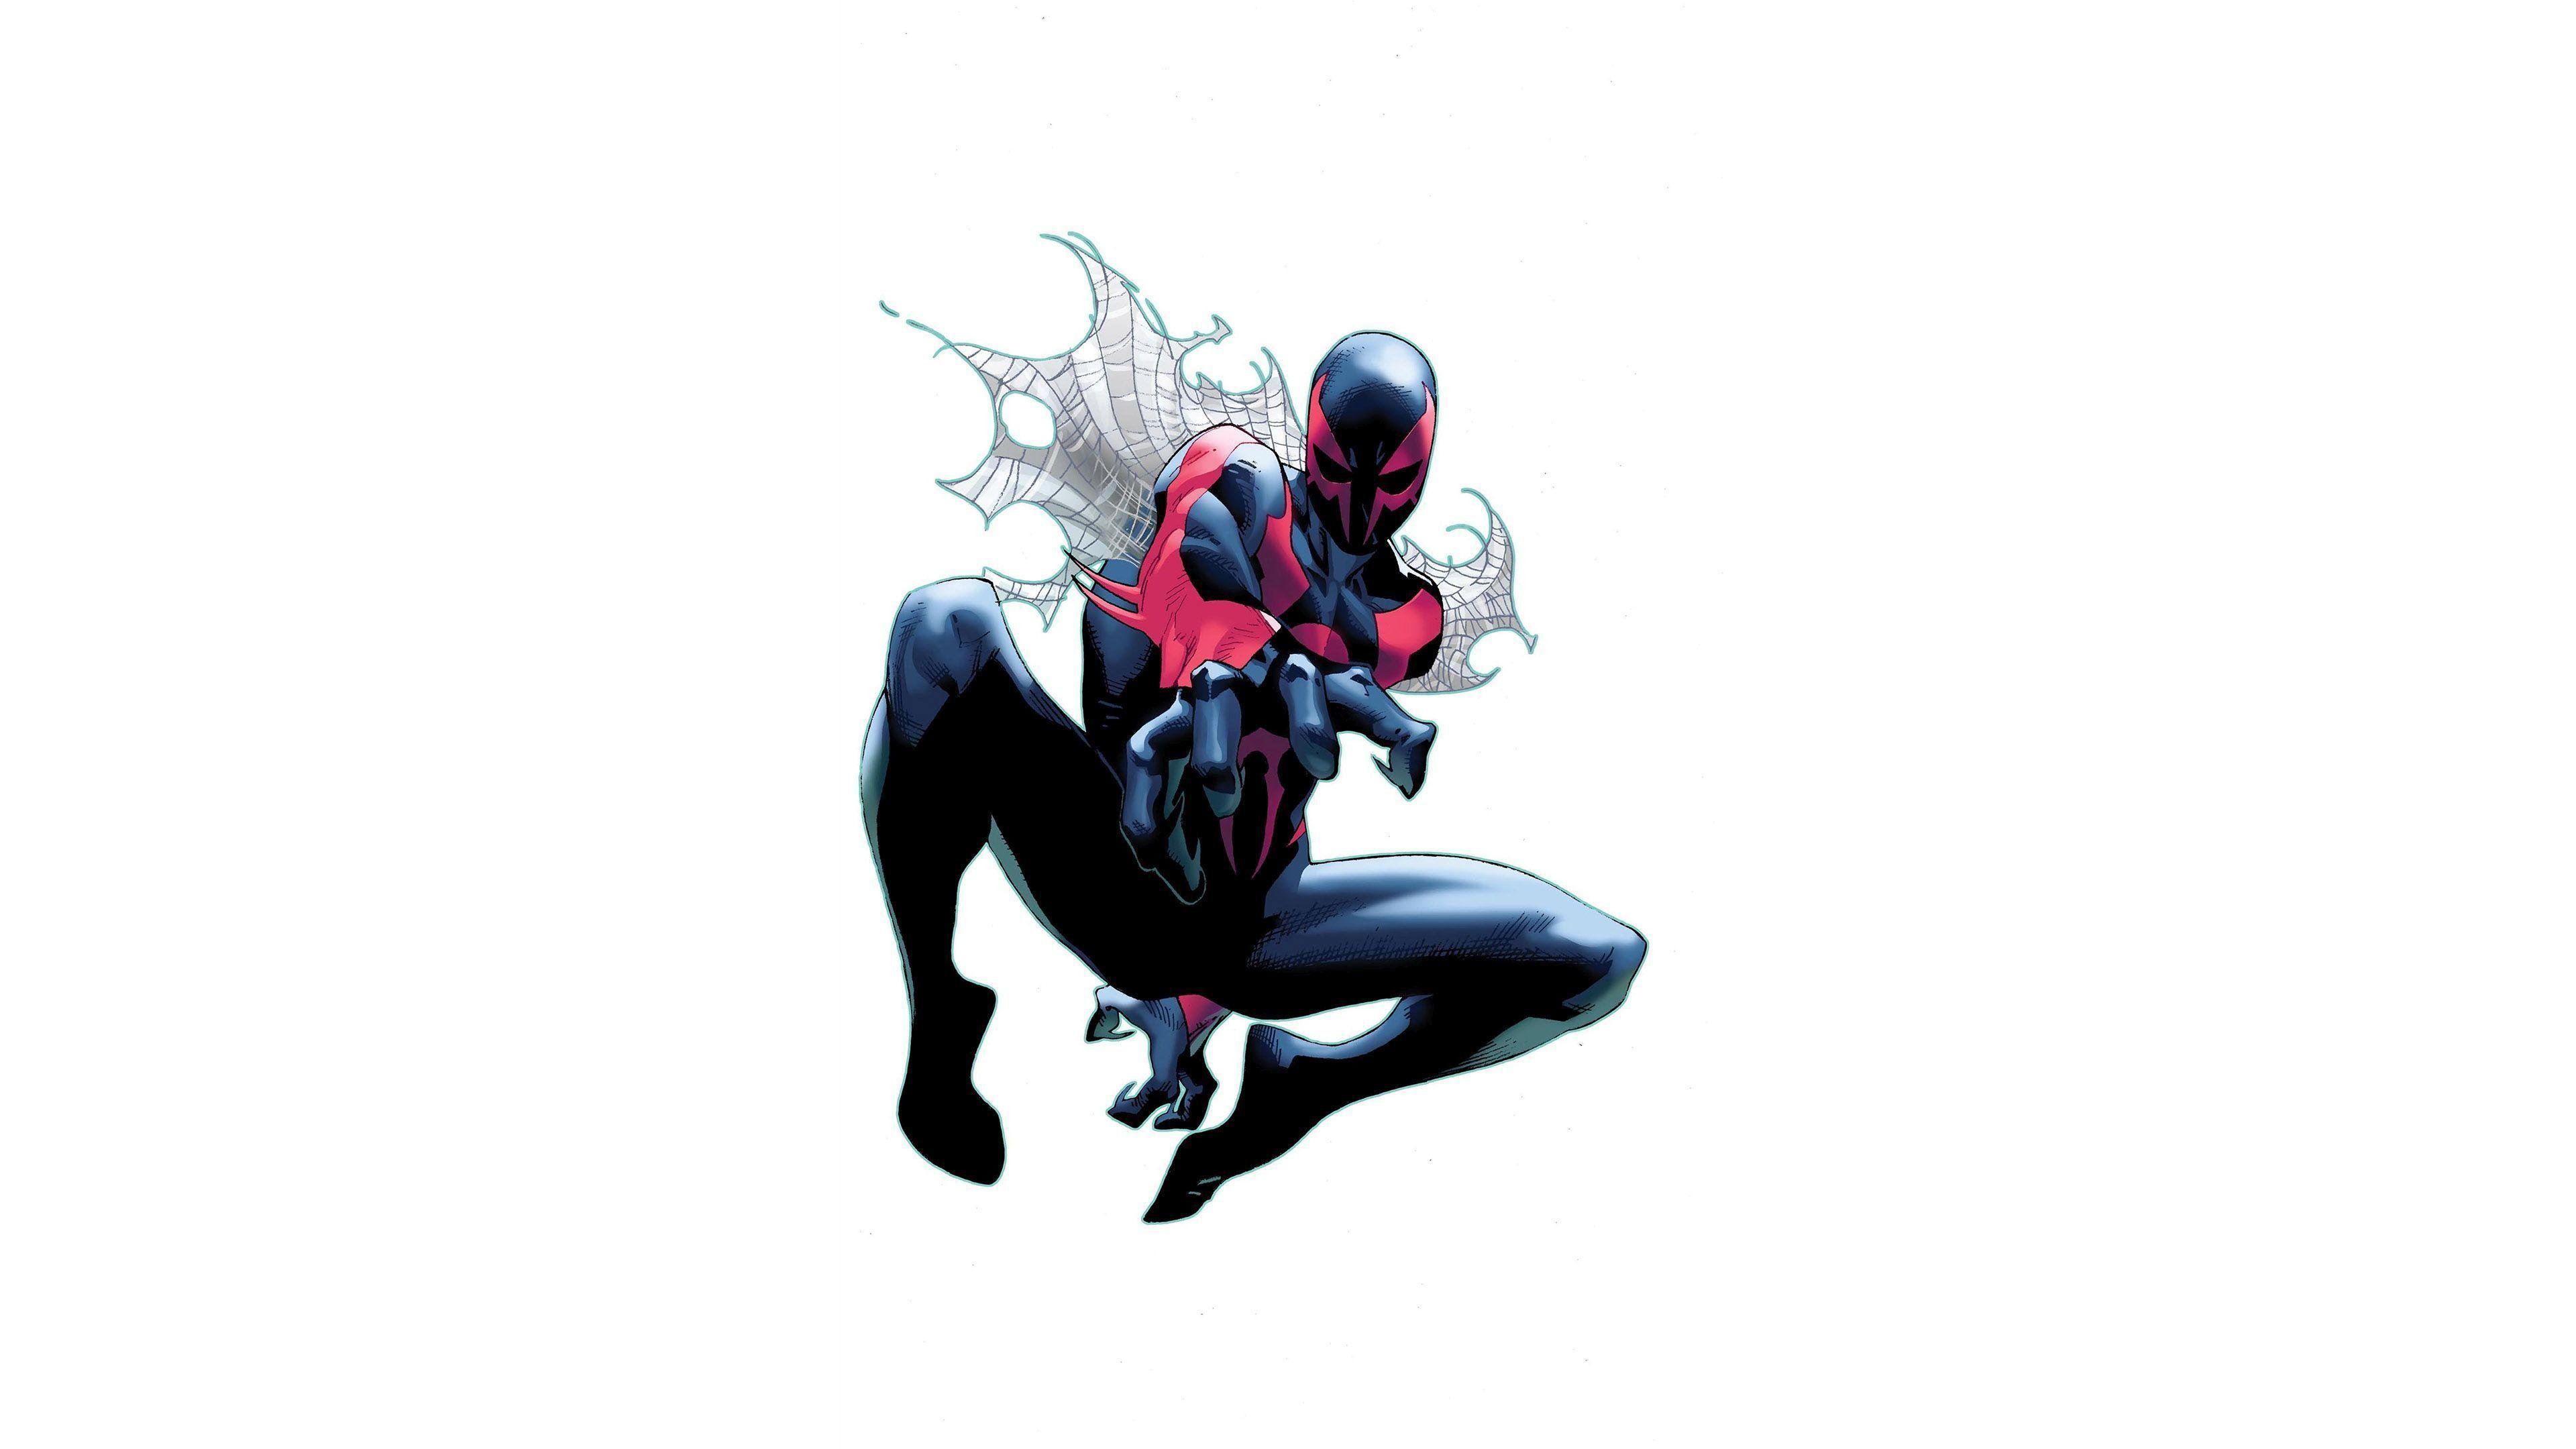 Jumping Superior Spider Man HD Desktop Wallpaper, Widescreen, High